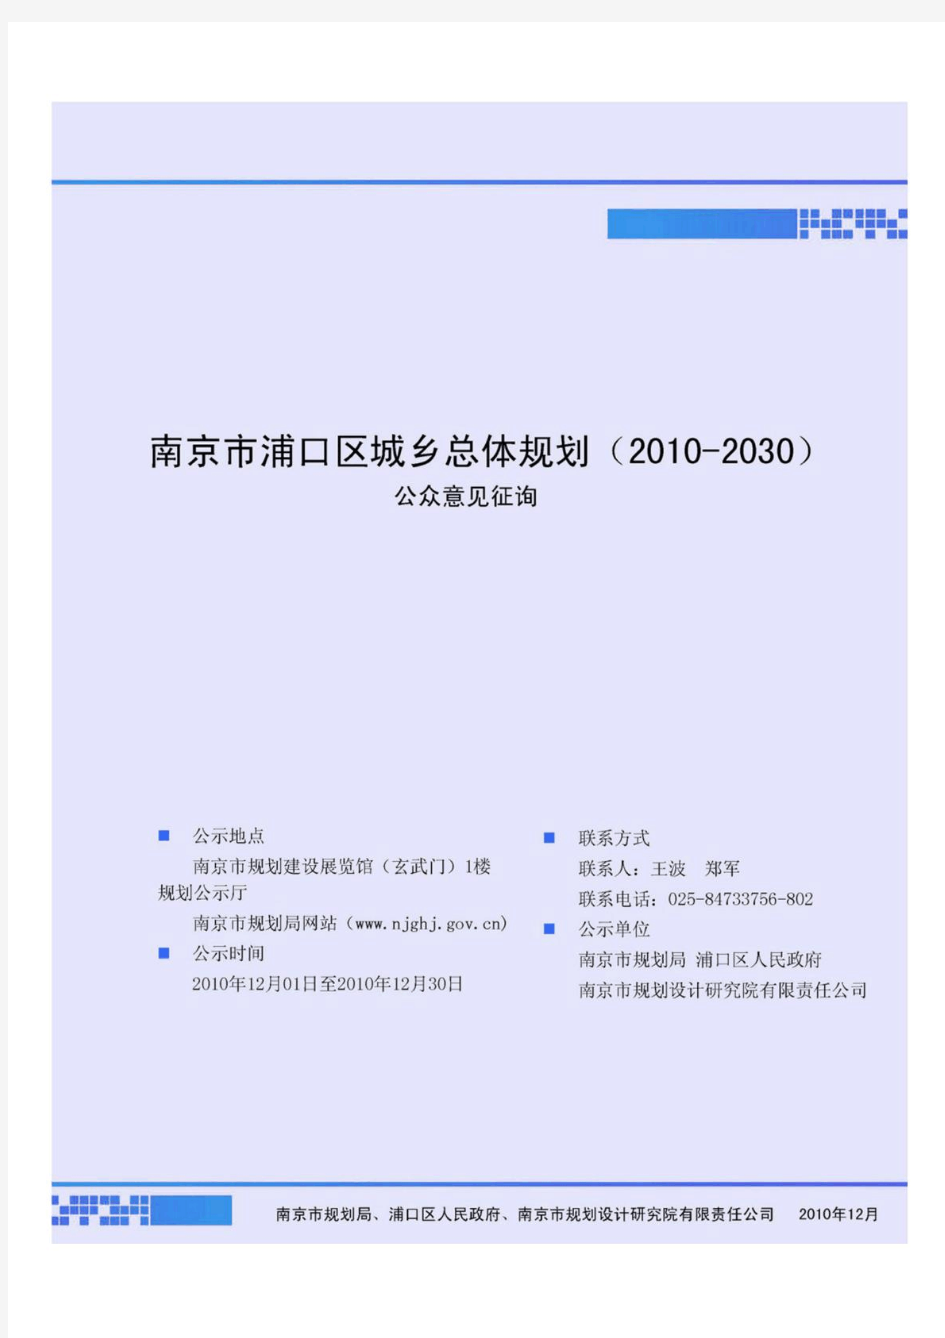 南京市浦口区总体规划(2010-2030)